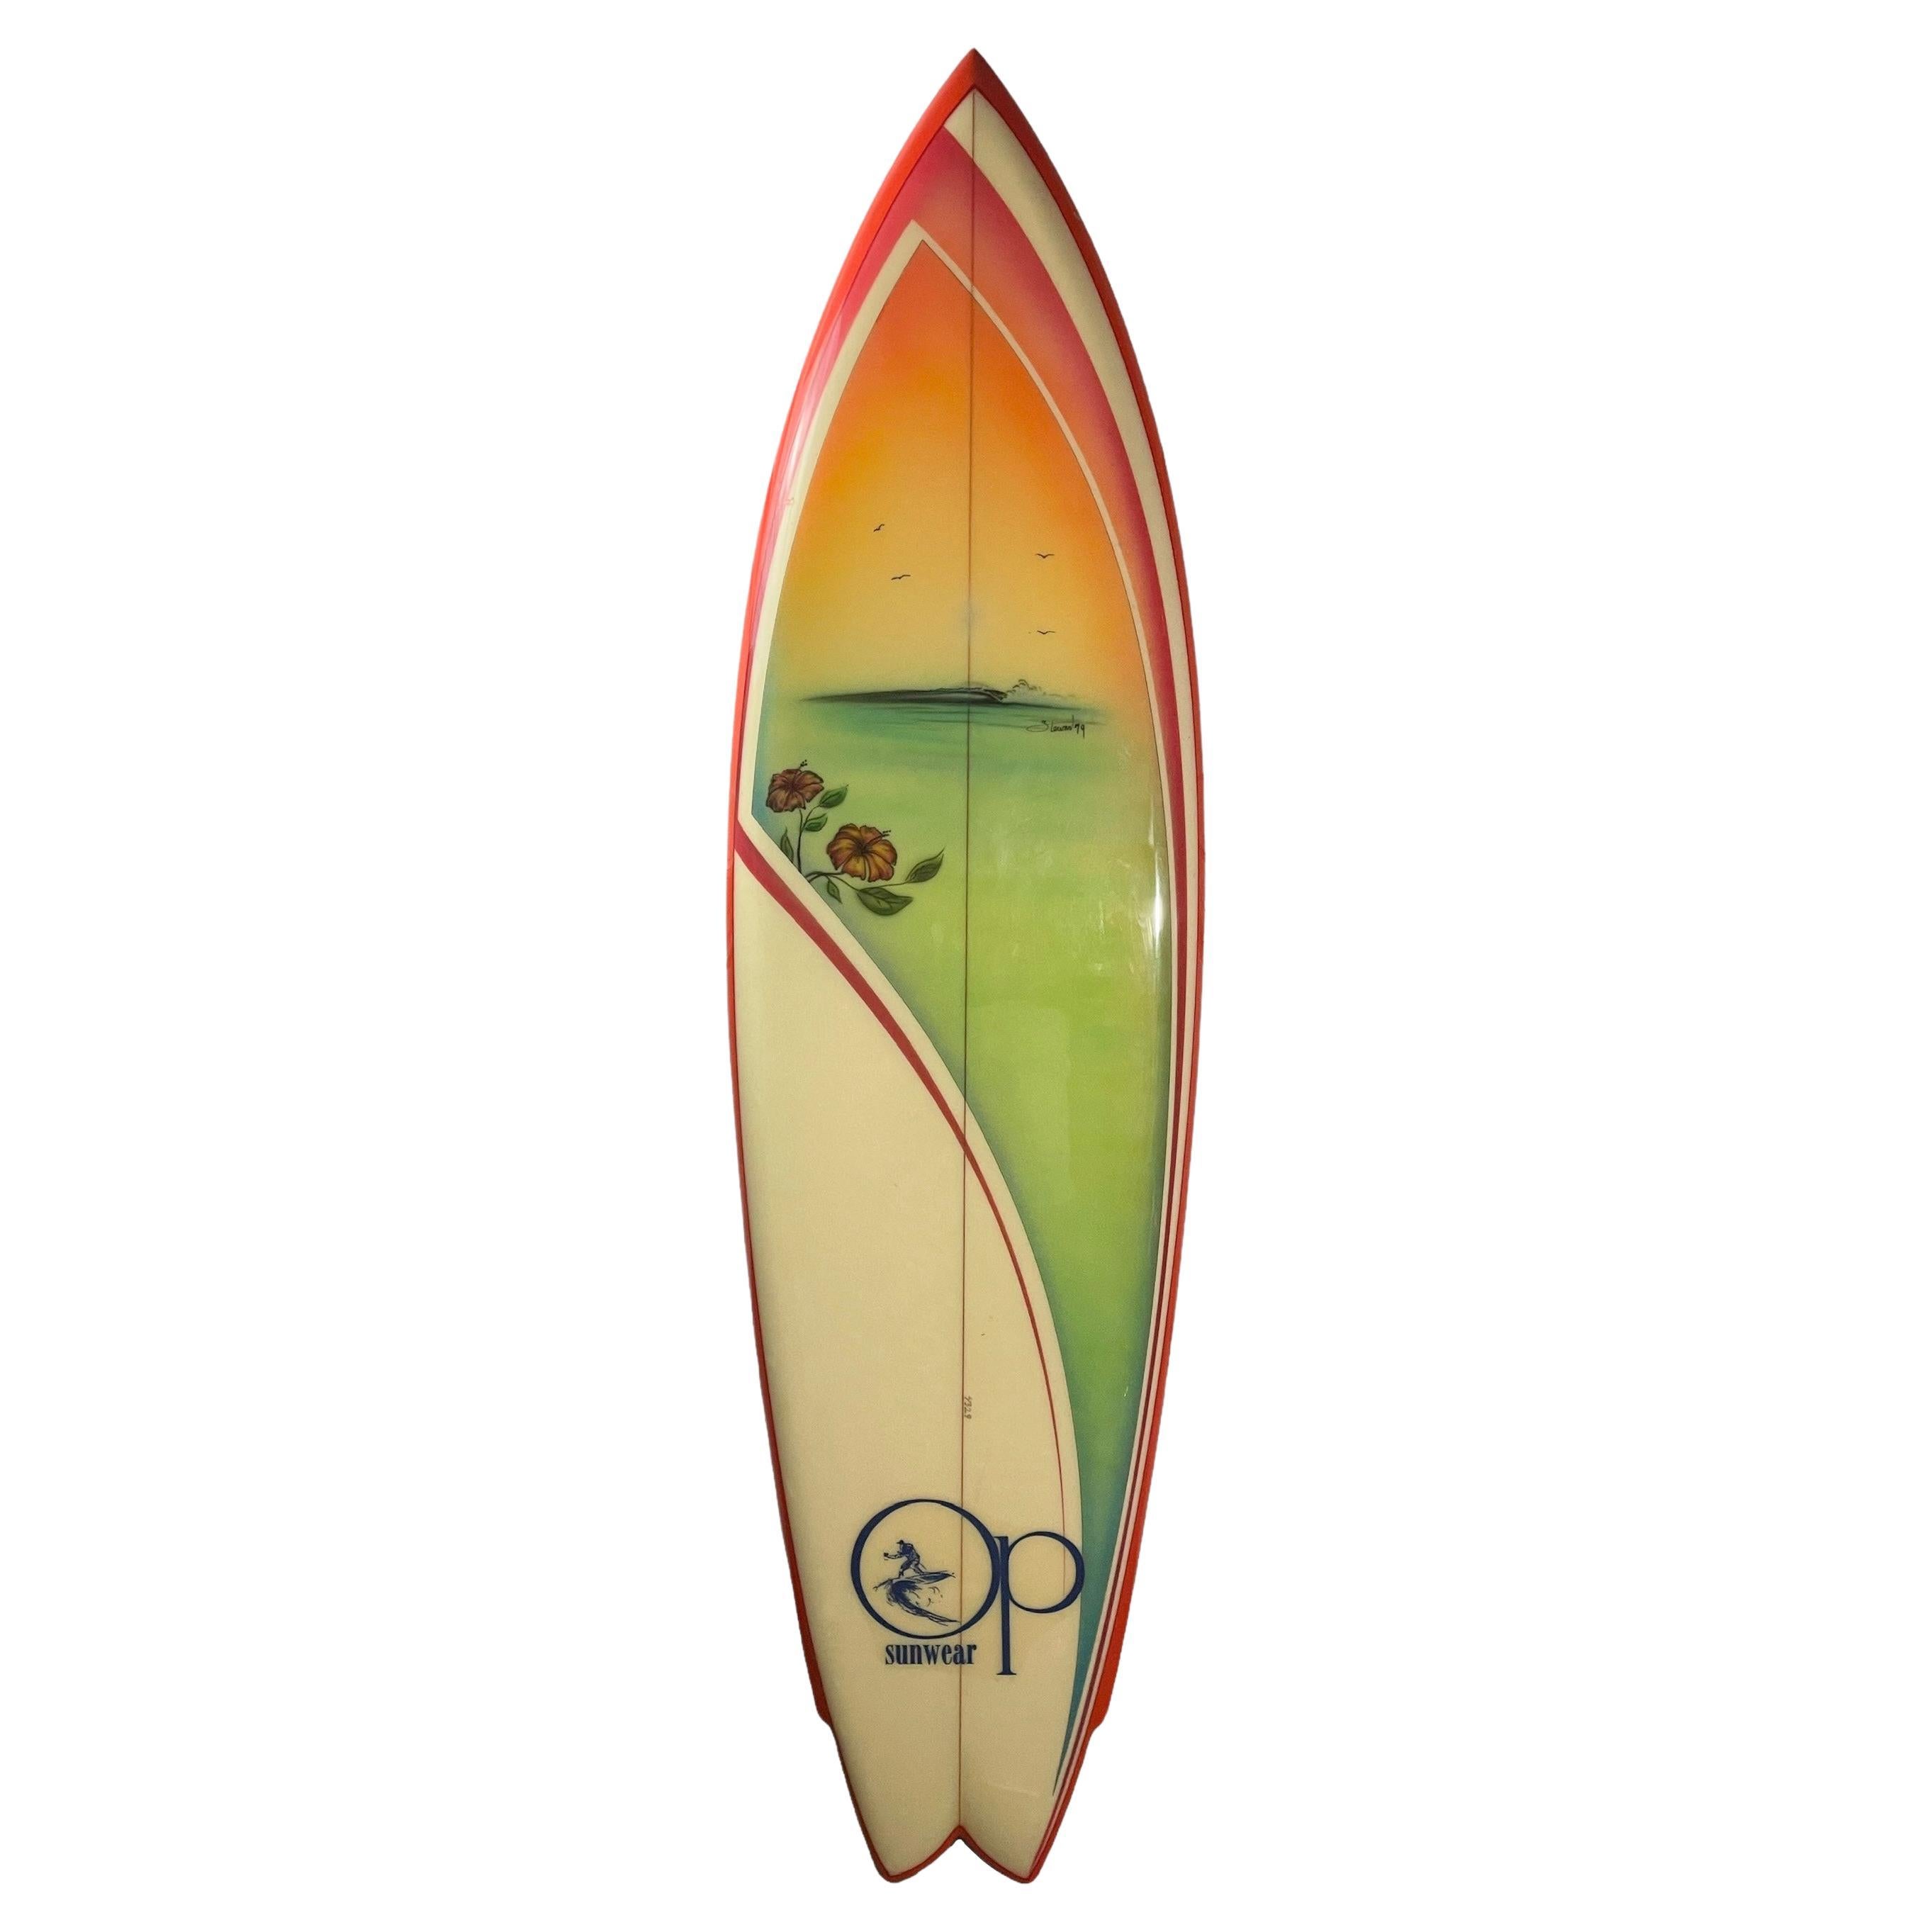 1979 Vintage Ocean Pacific Wave Mural Surfboard with artwork by Bill Stewart